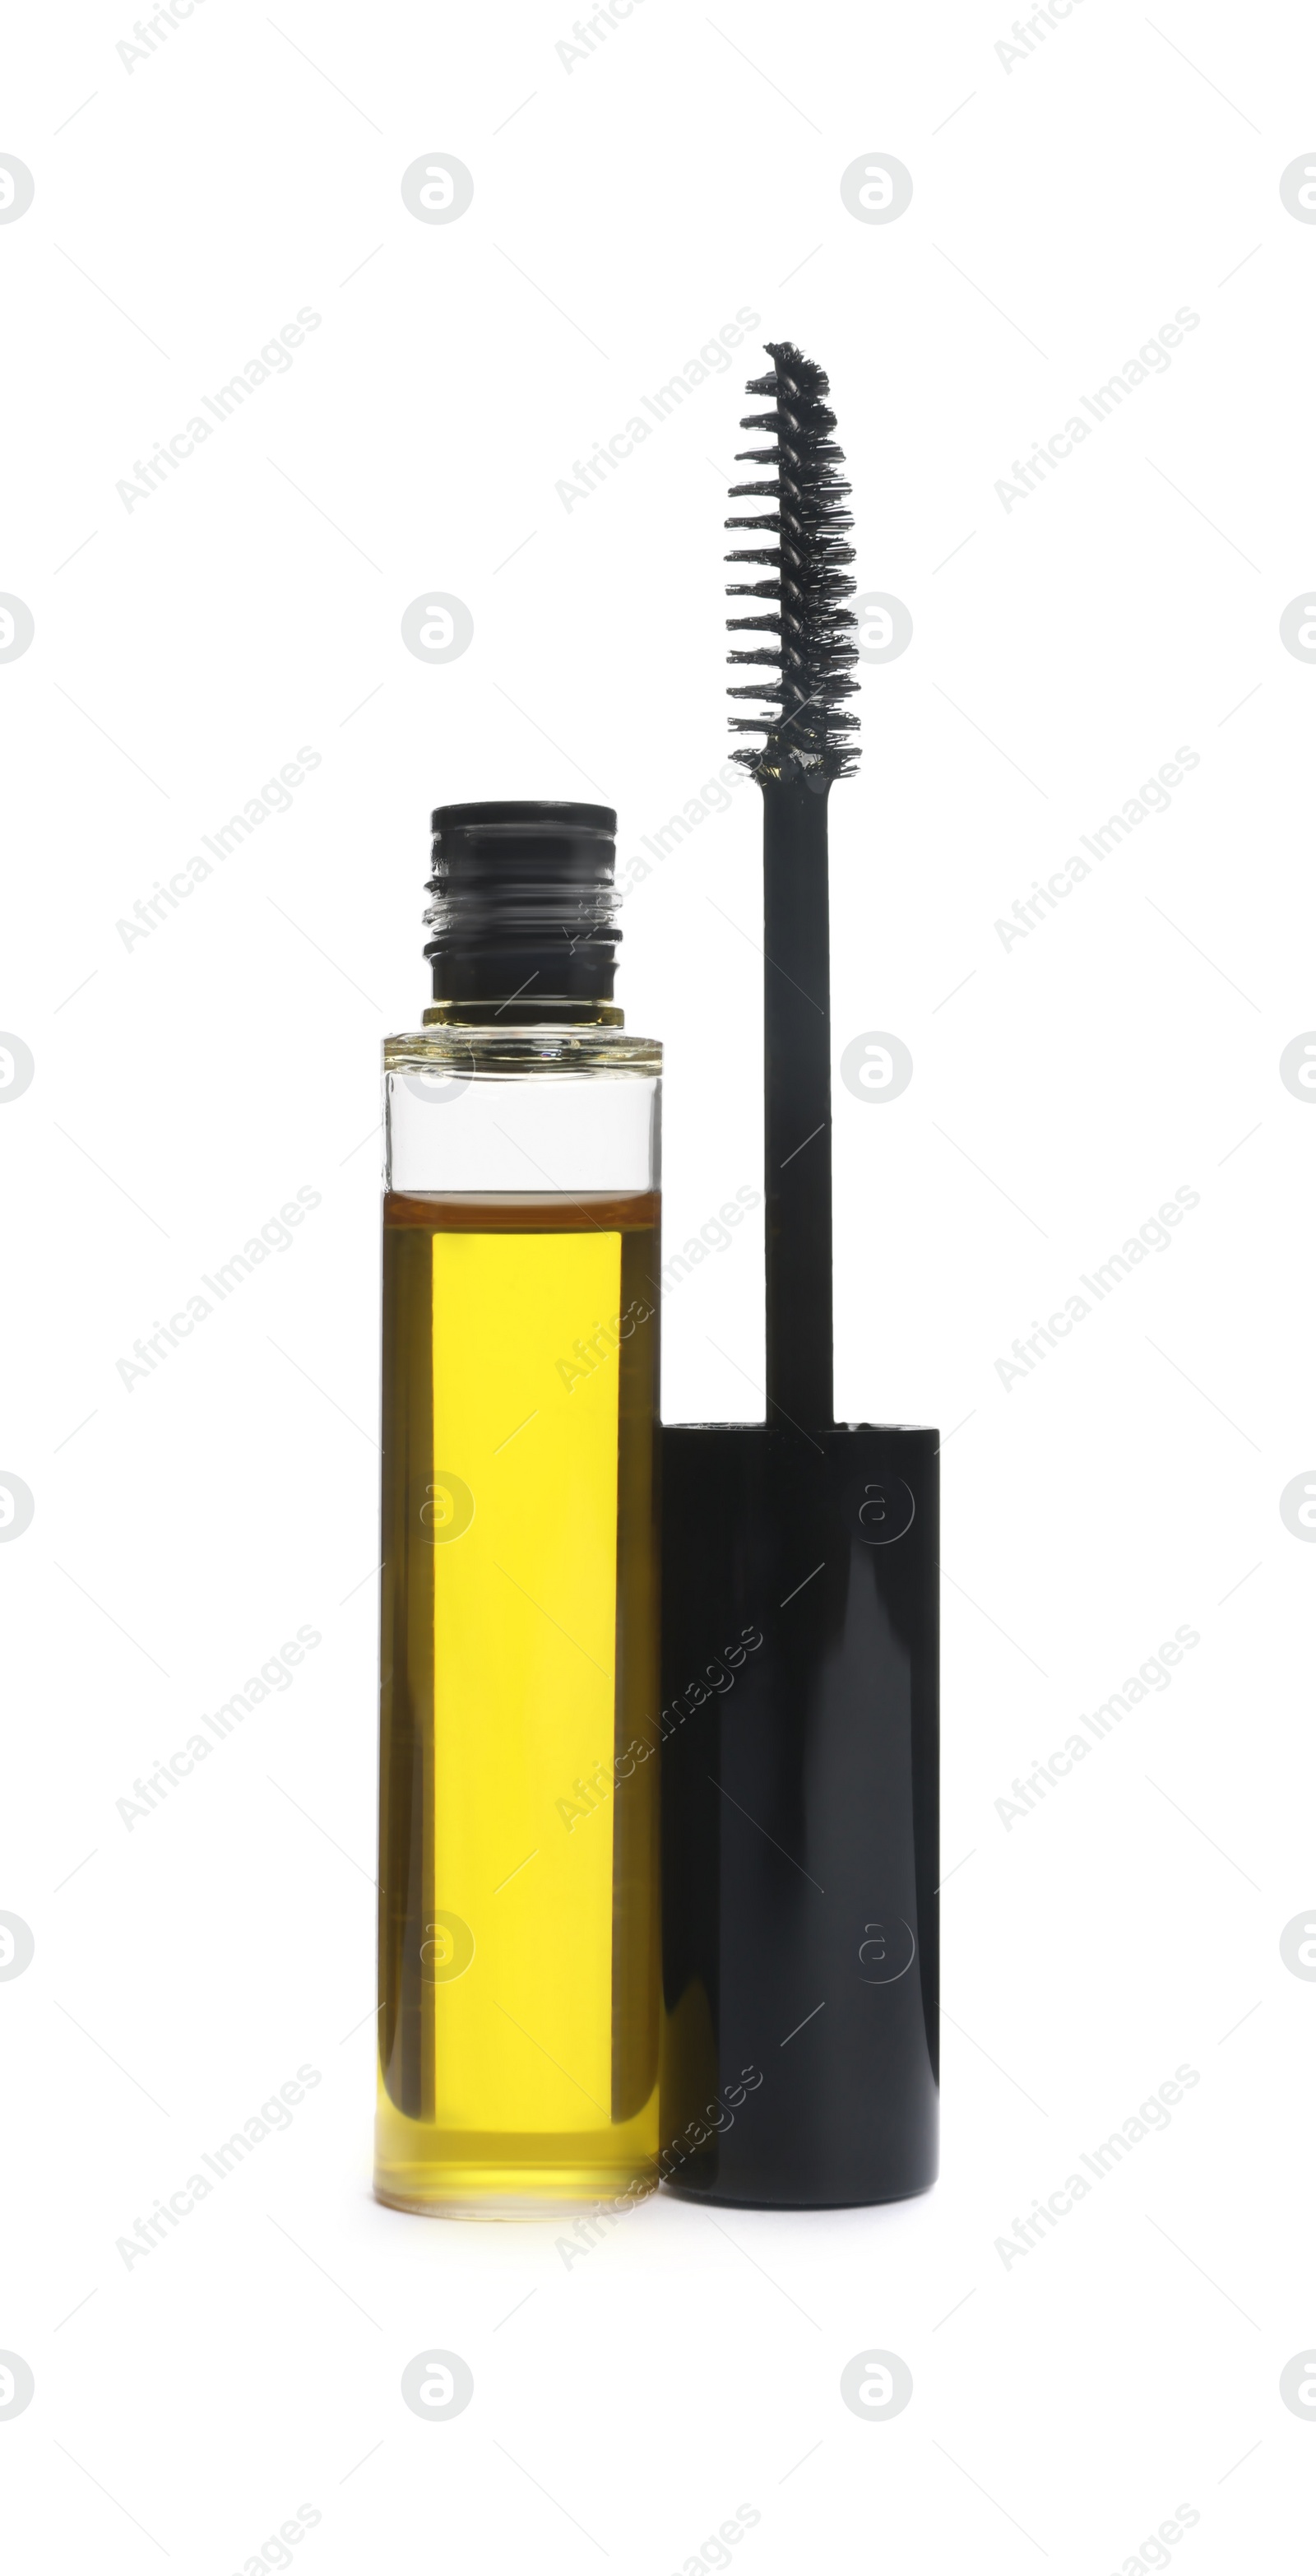 Photo of Tube of eyelash oil and brush isolated on white